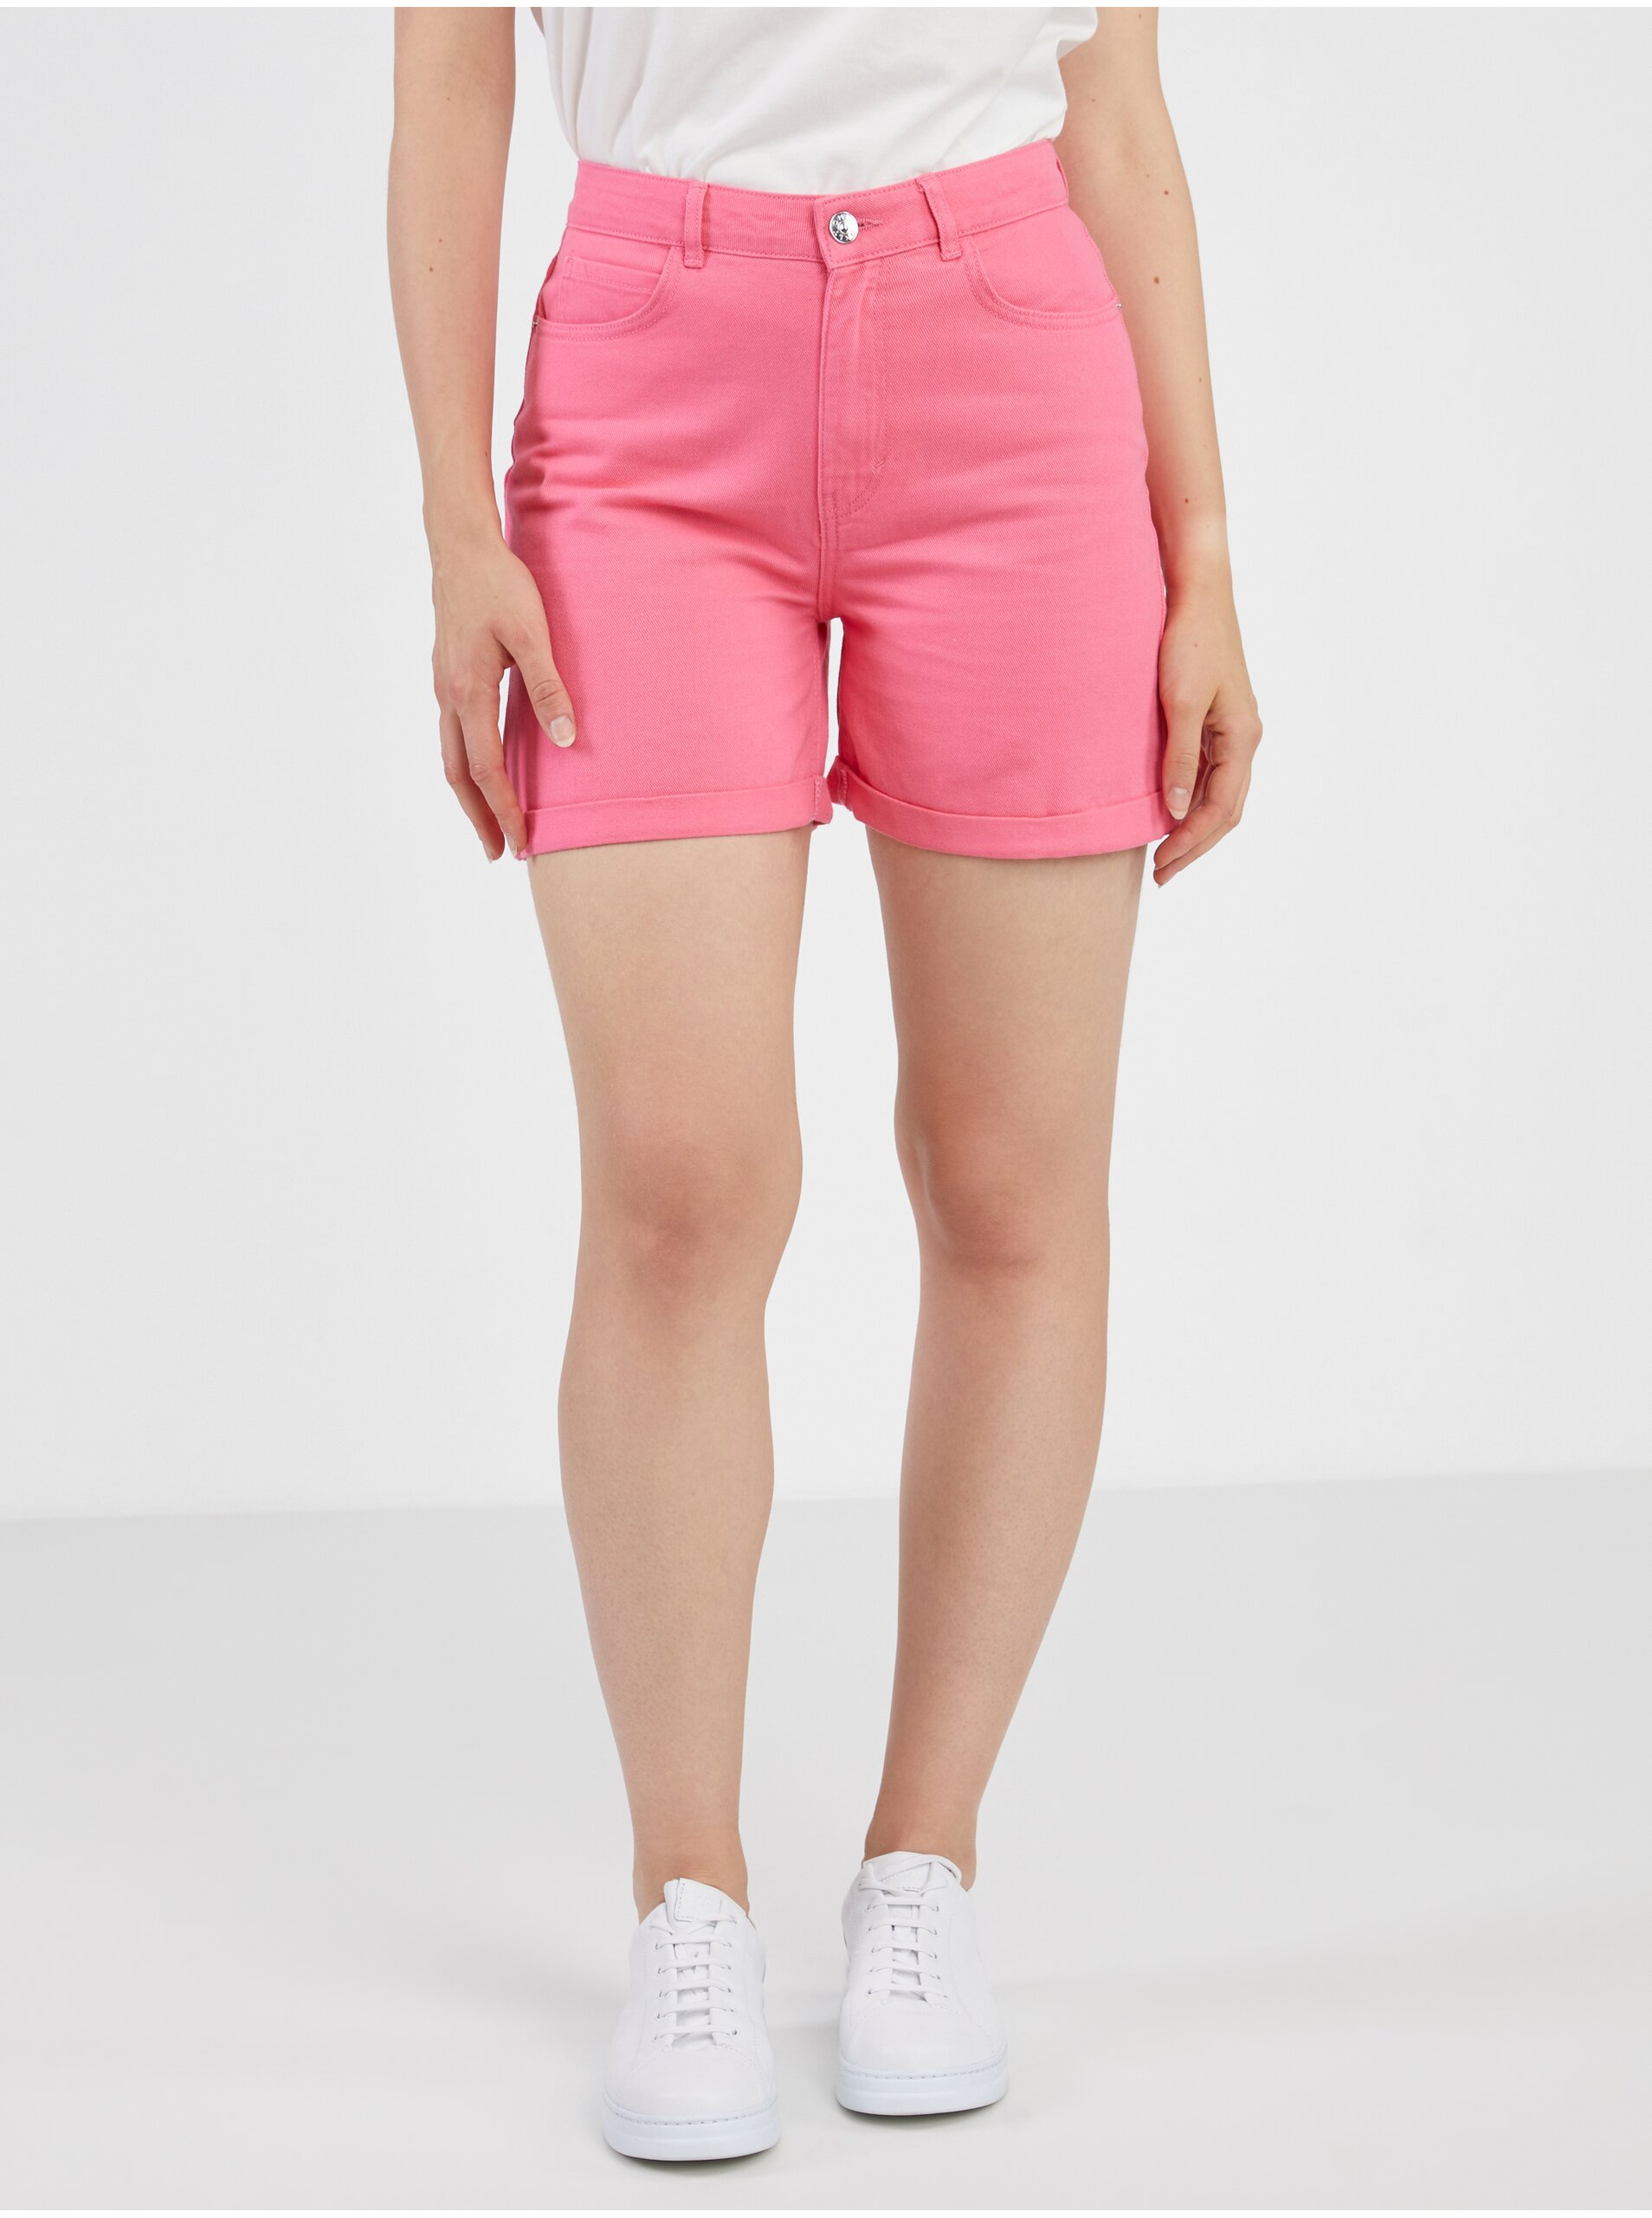 E-shop Tmavě růžové dámské džínové kraťasy ONLY Vega